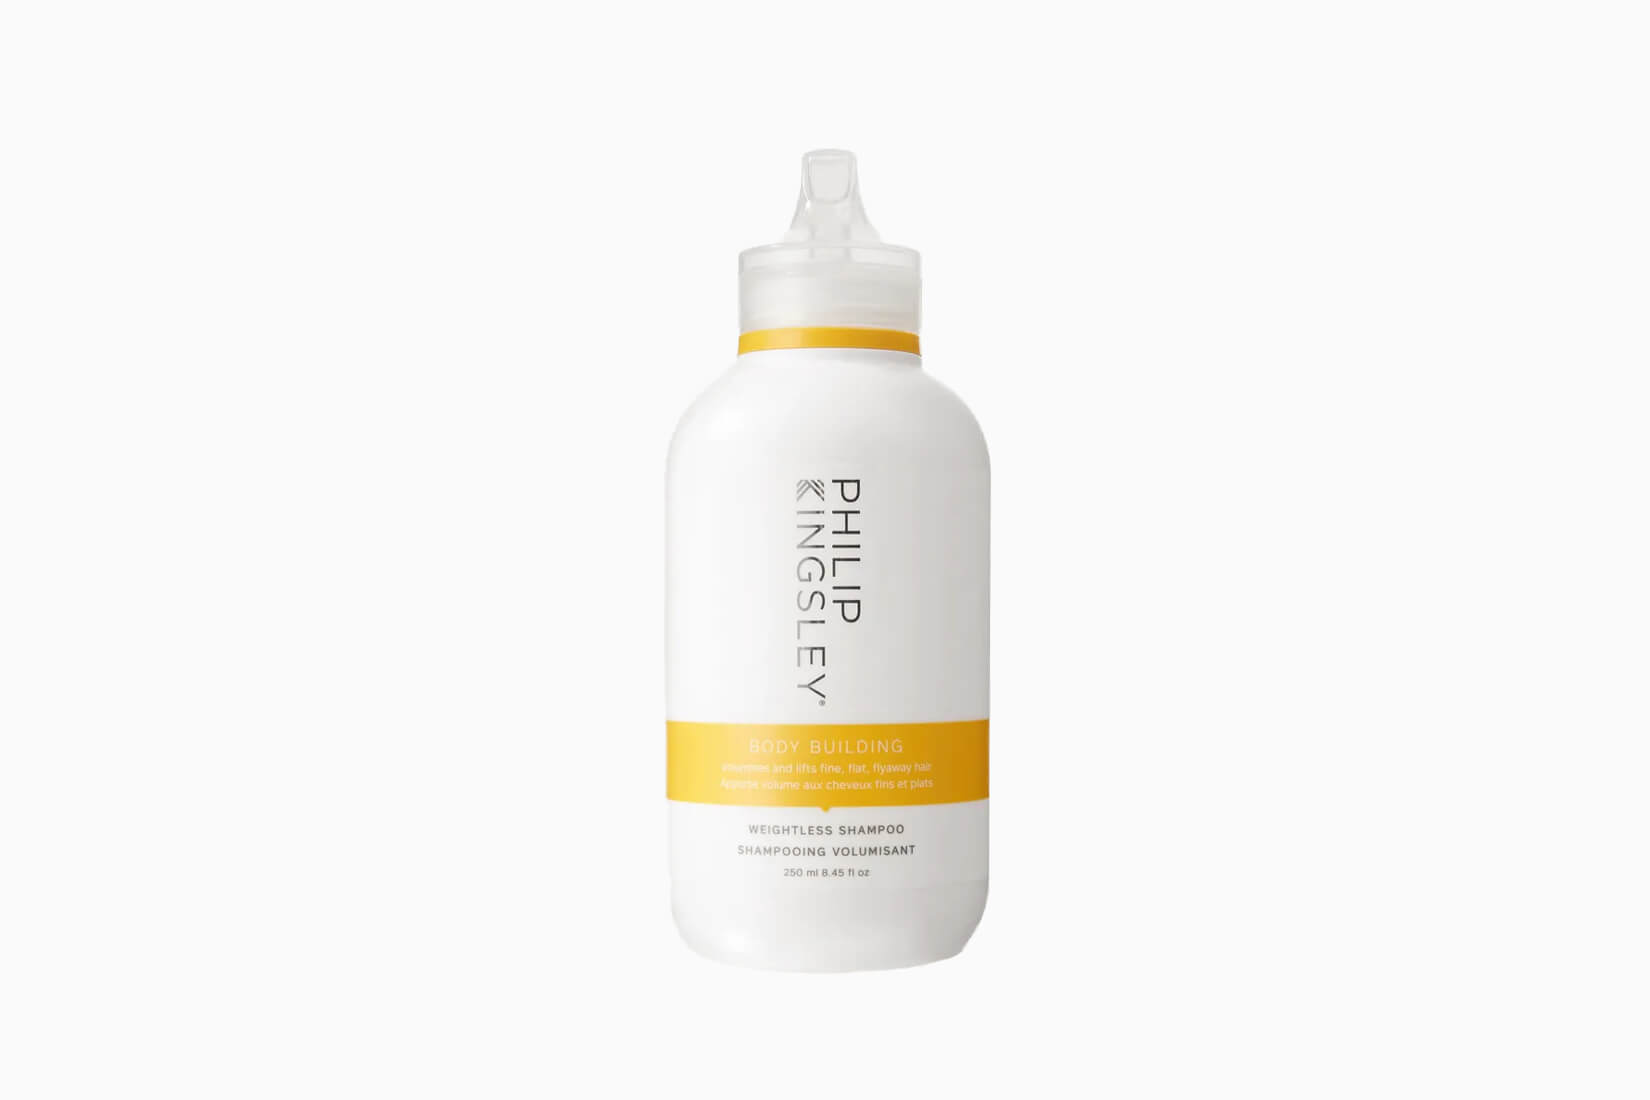 Le meilleur shampoing pour la pousse des cheveux des femmes Philip Kingsley - Luxe Digital